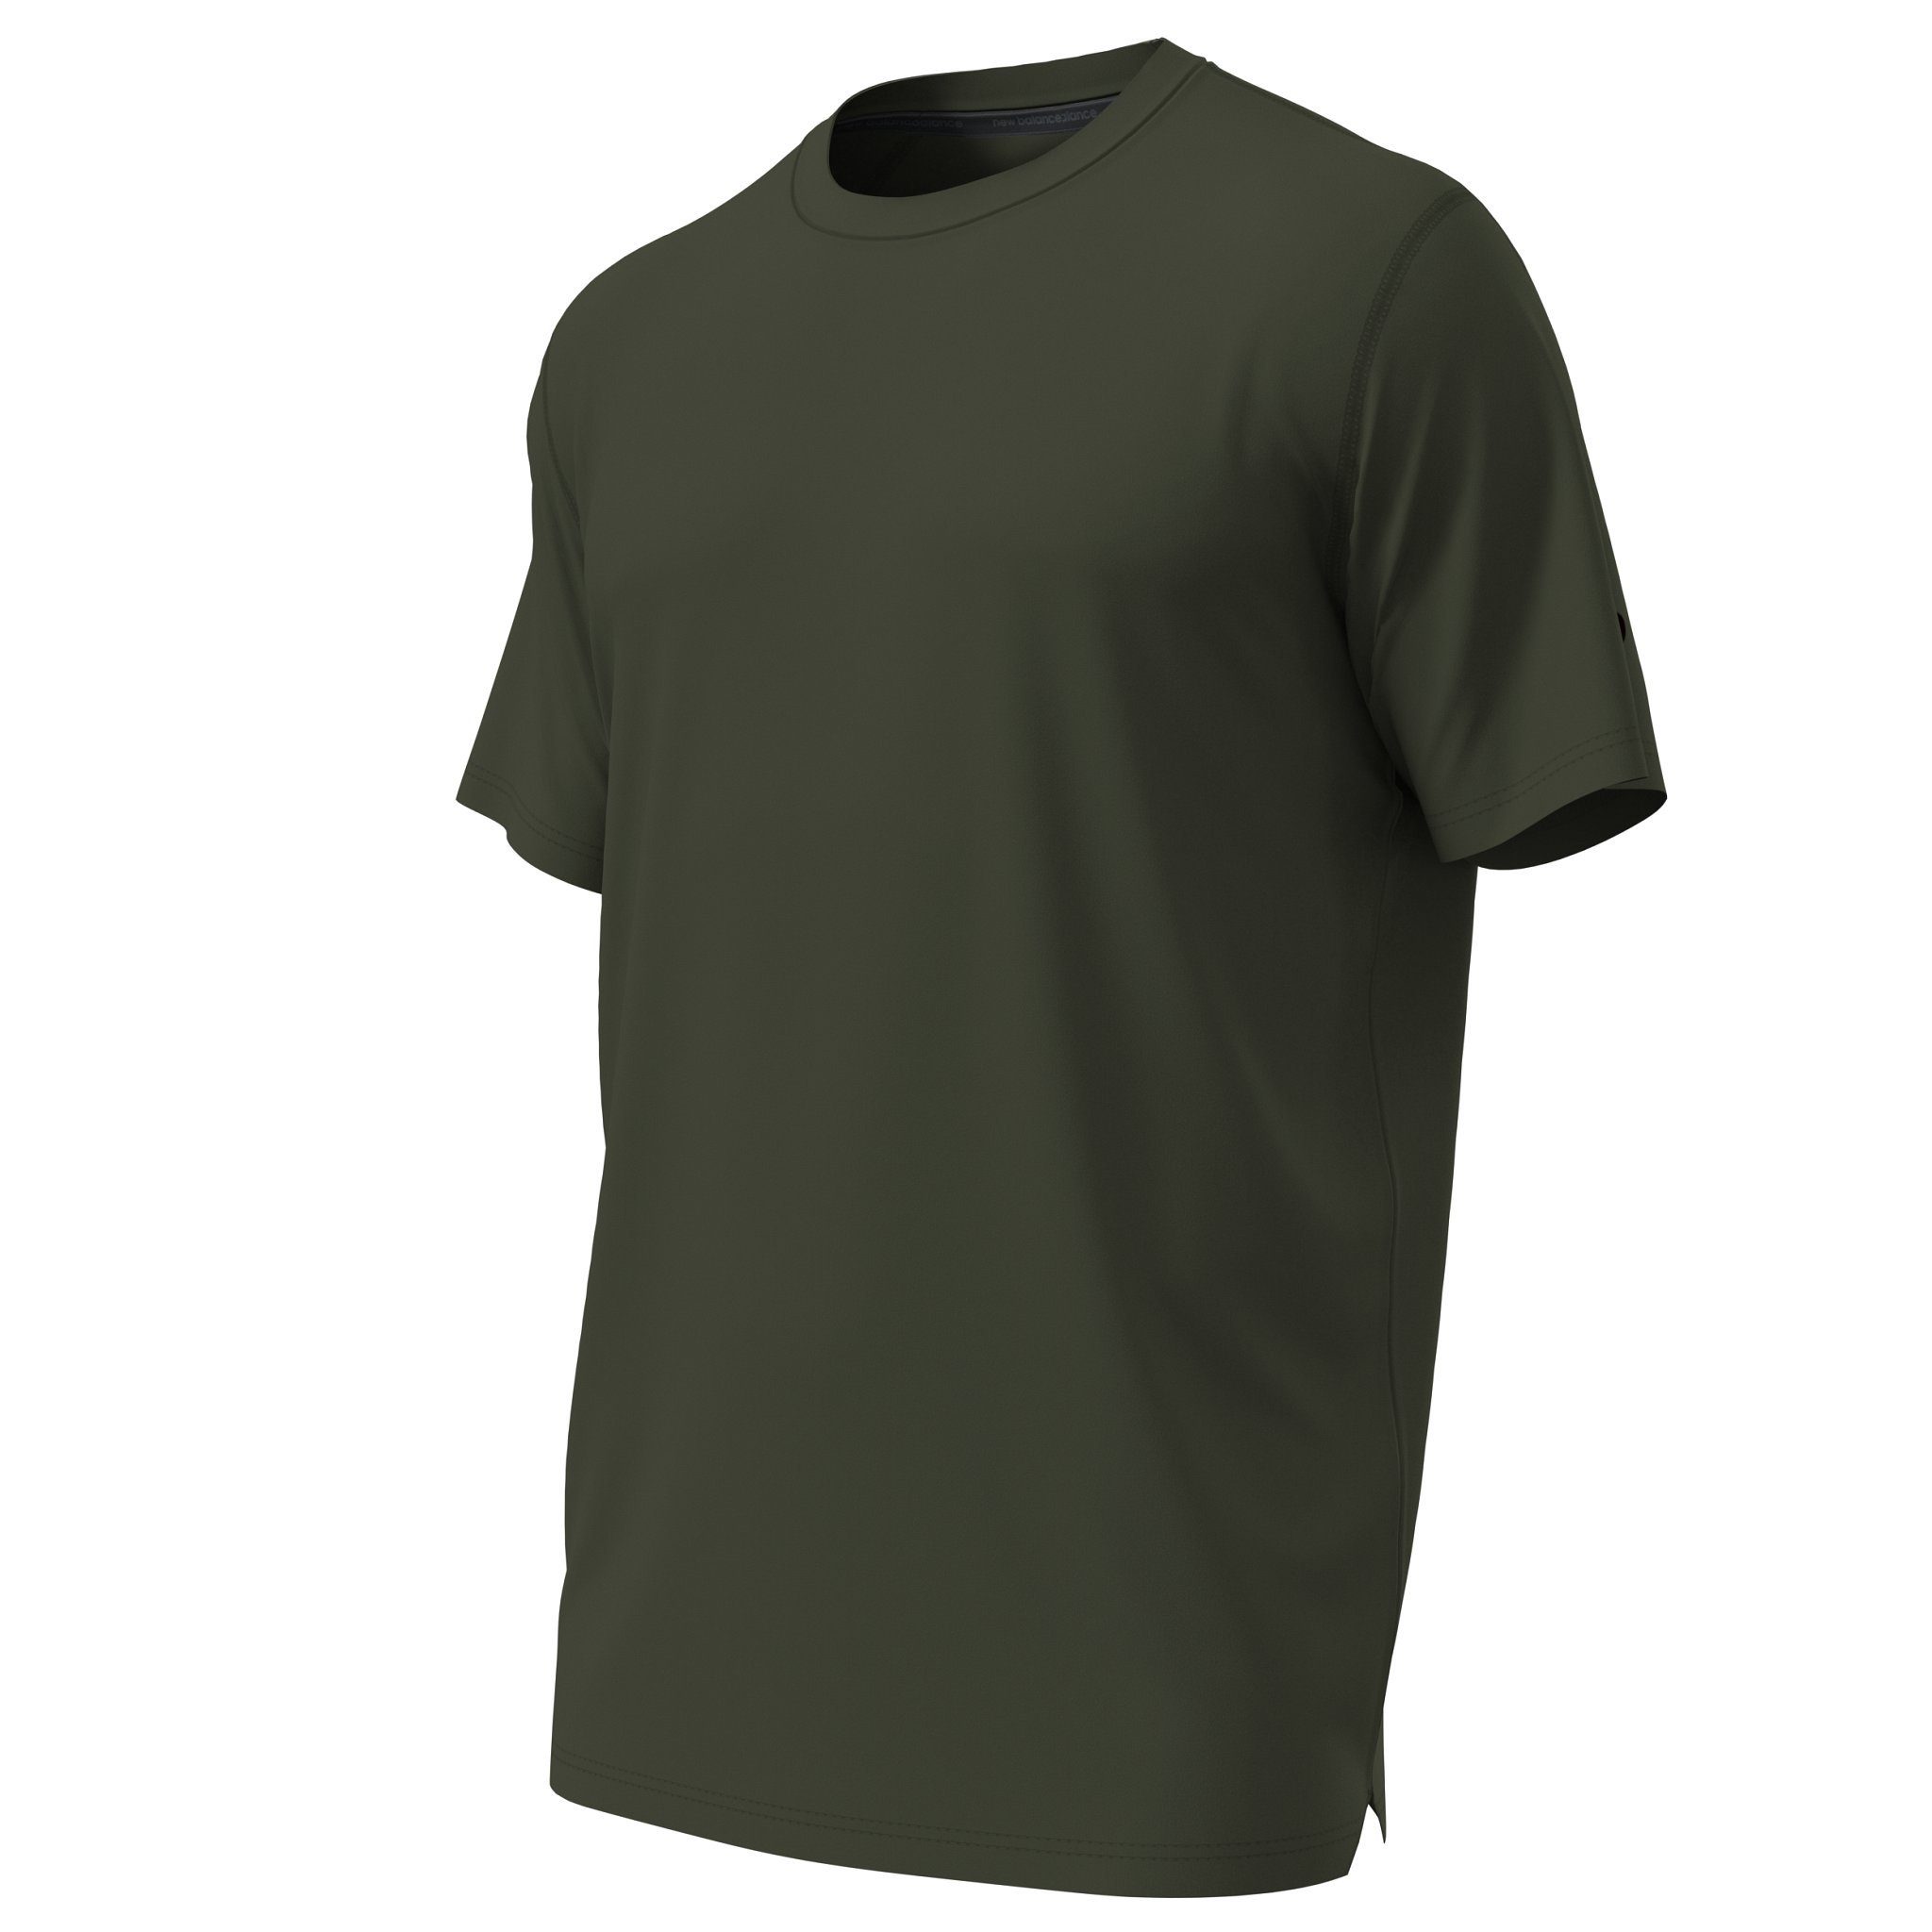 Balance kombu T-Shirt New